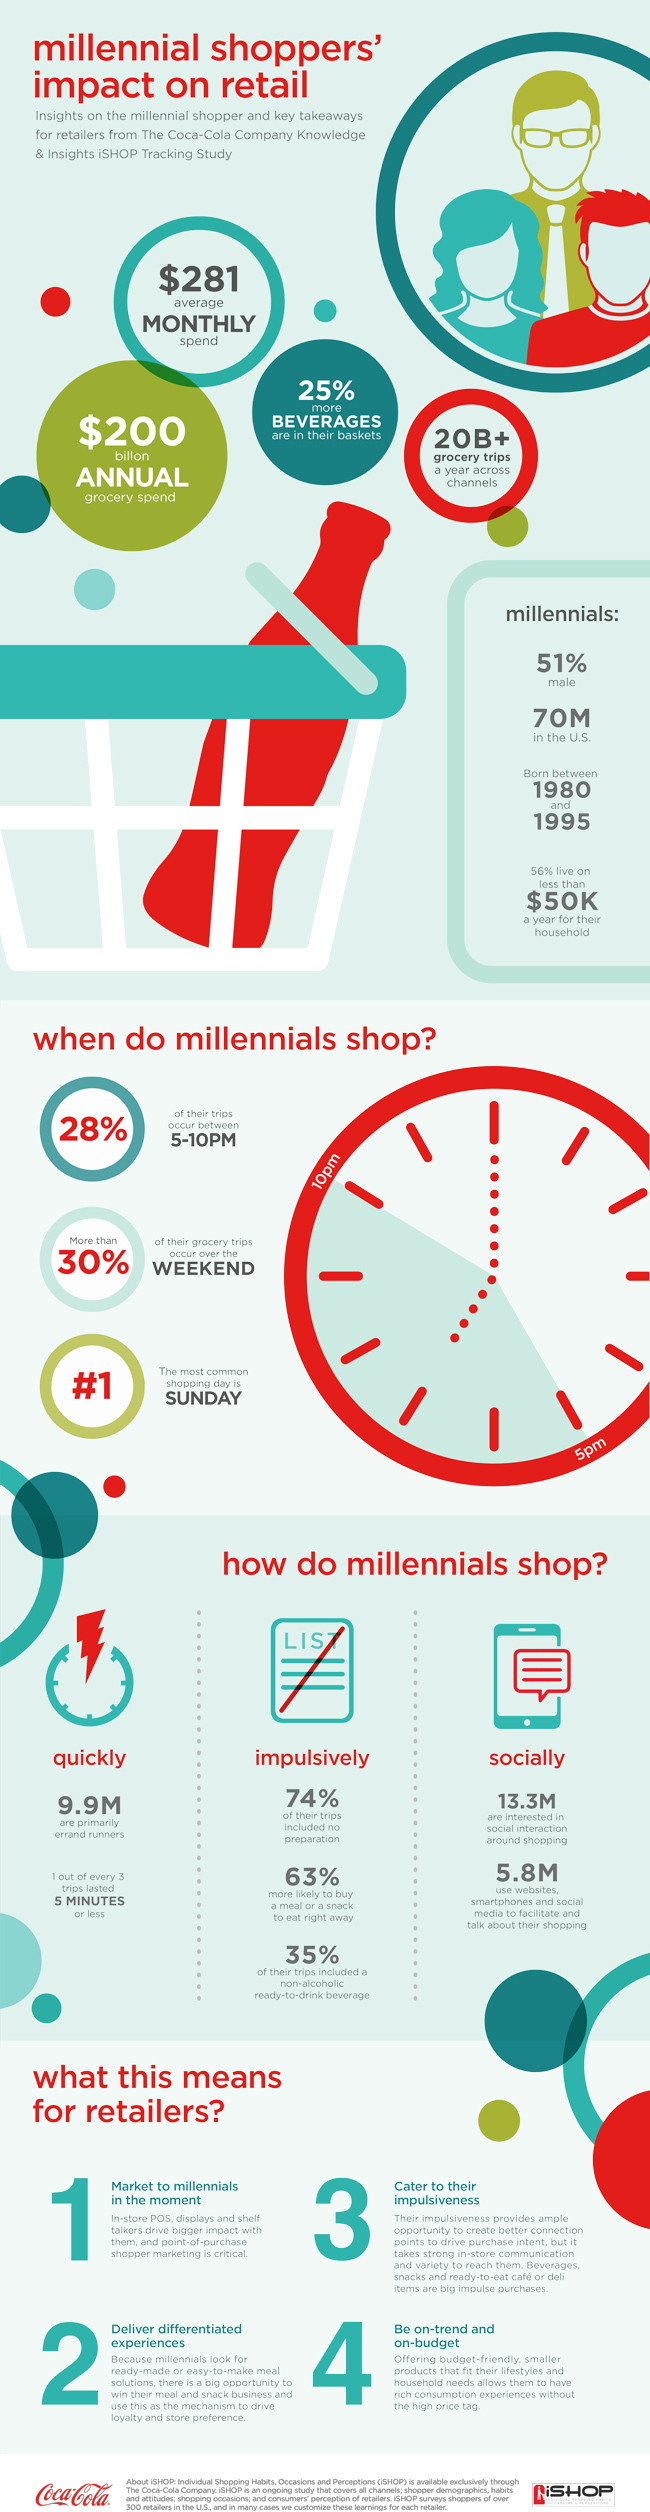 MillennialShopper_Infographic.jpg